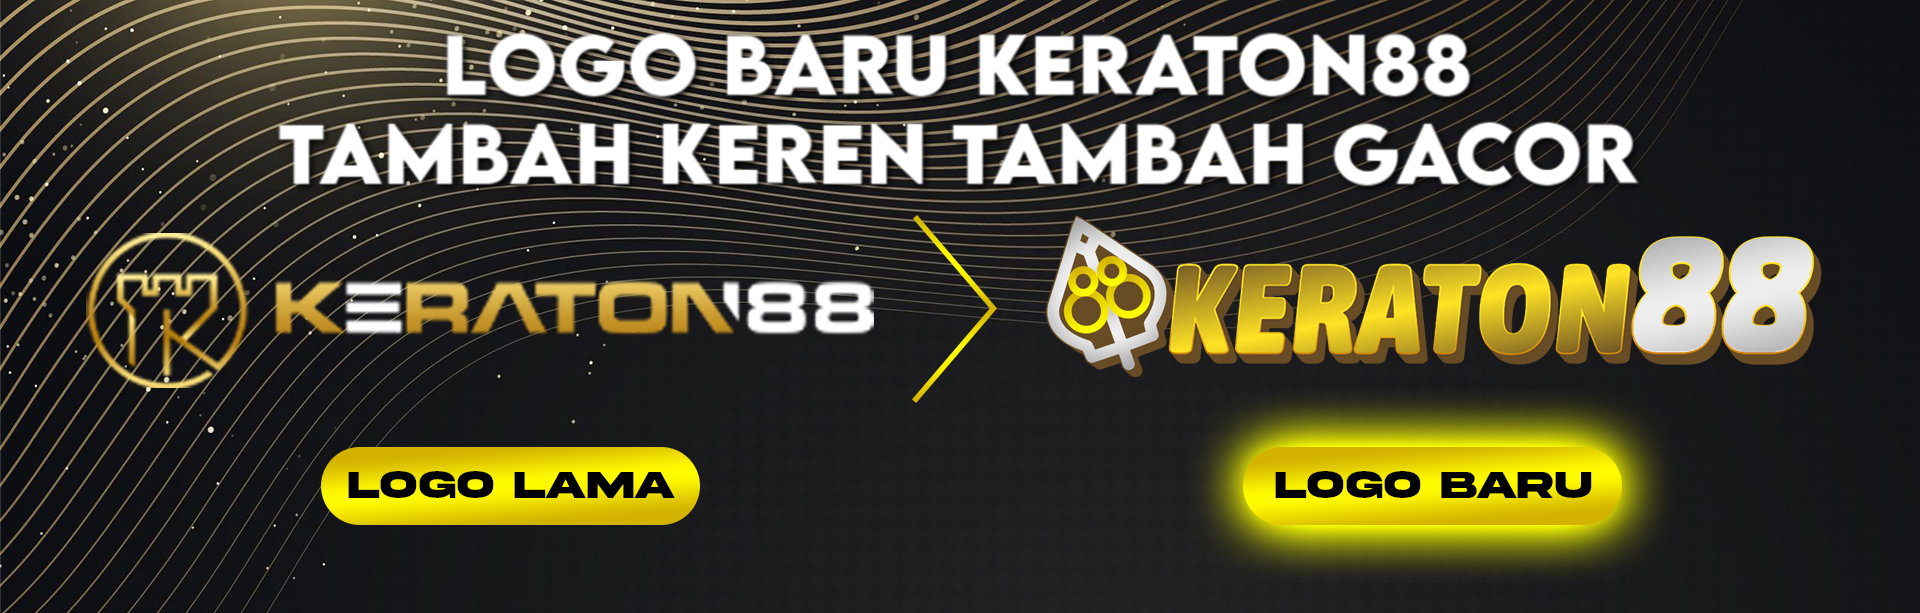 logo keraton88